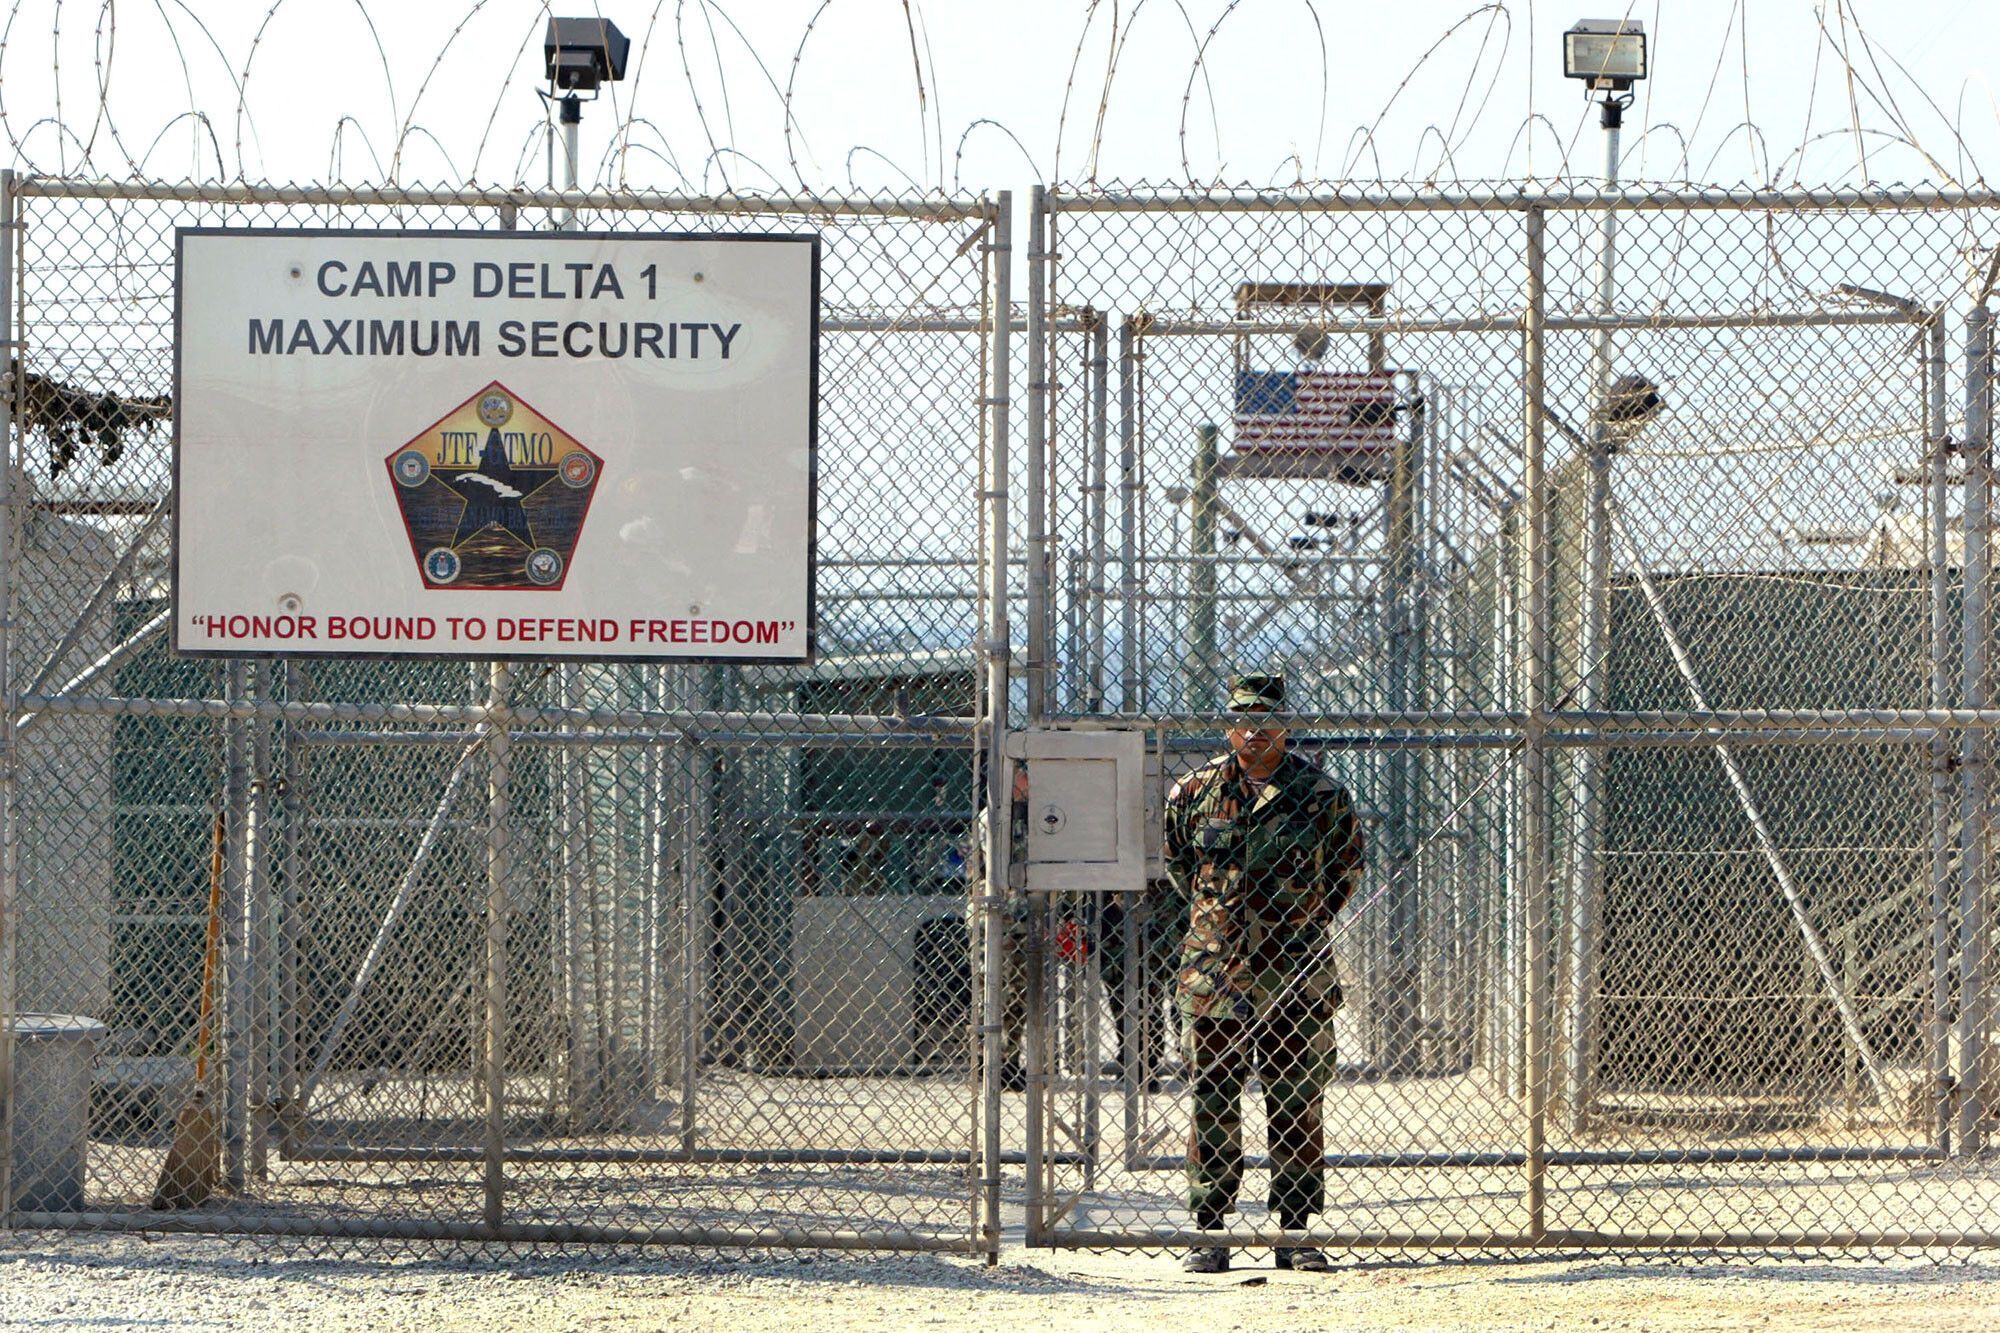 Хайрулла Хайрхва содержался в тюрьме Гуантанамо